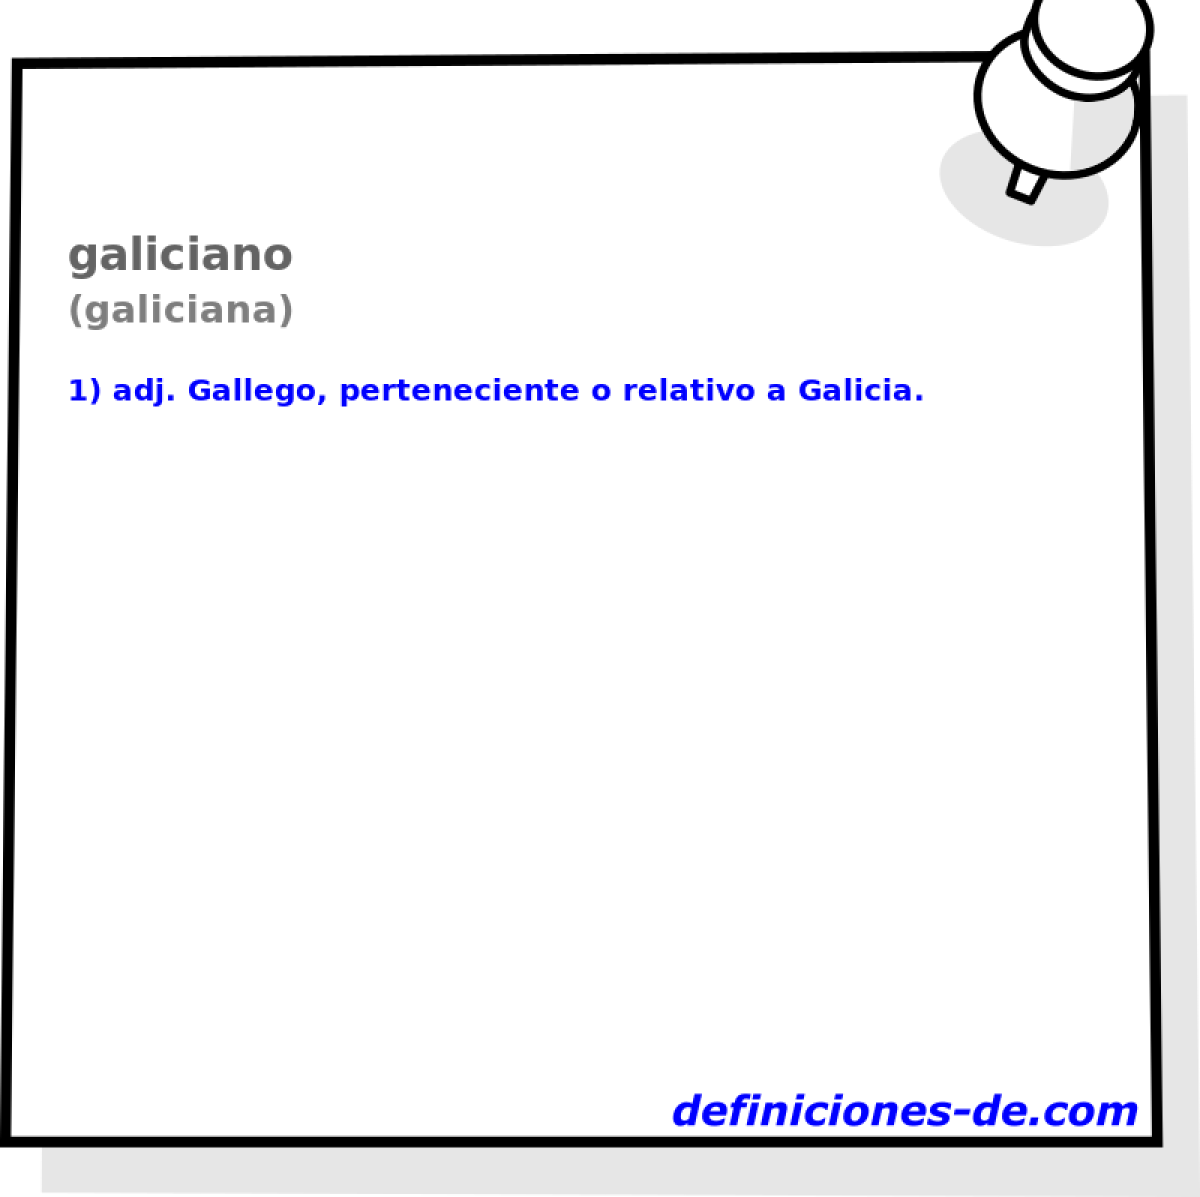 galiciano (galiciana)